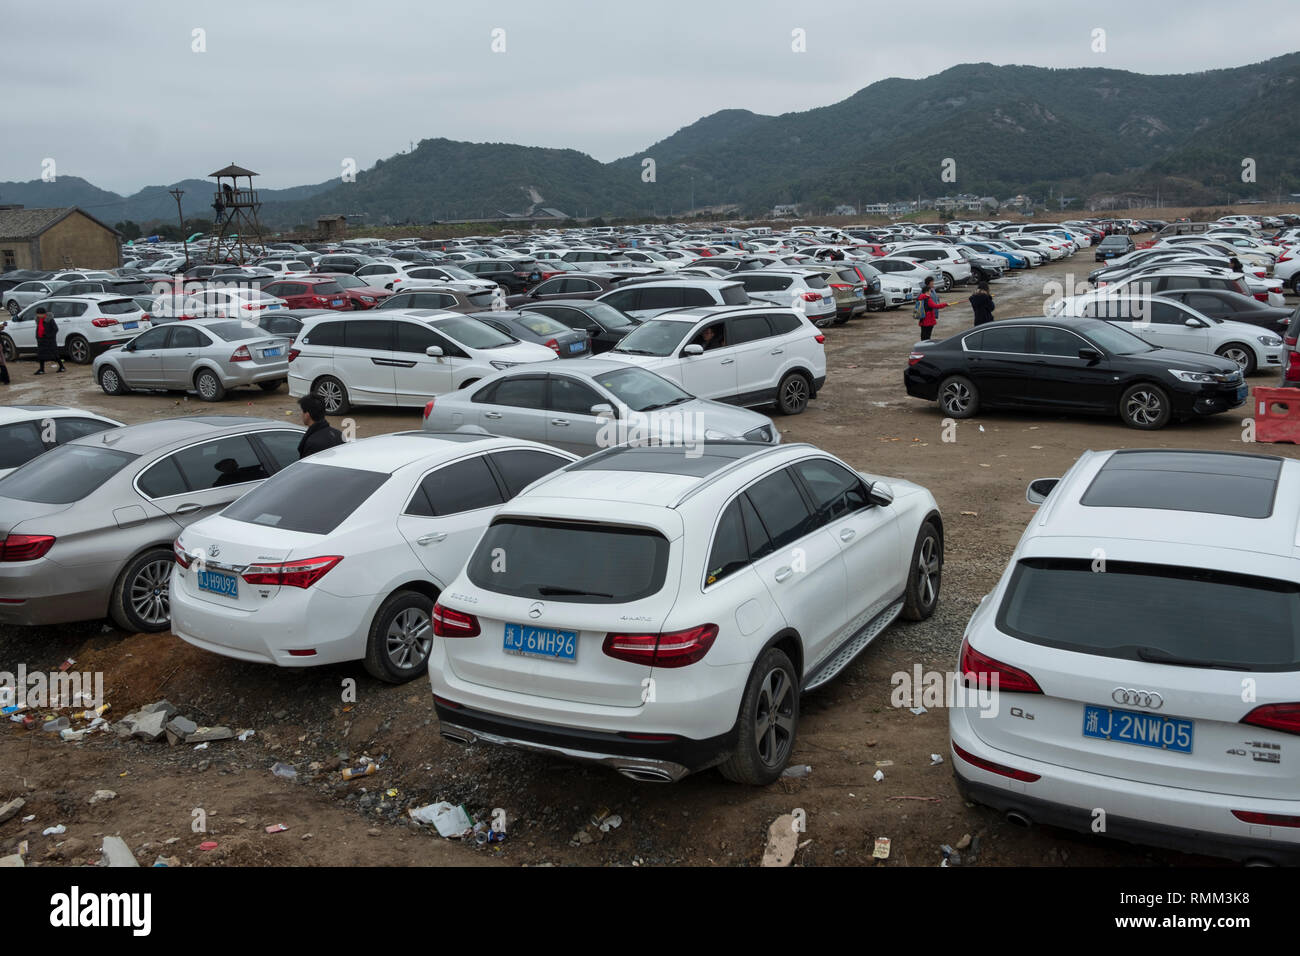 Il parcheggio di Xiangshan Film Studio è affollata con numerose automobili private di turisti in Xiangshan, Zhejiang, Cina. 08-Feb-2019 Foto Stock